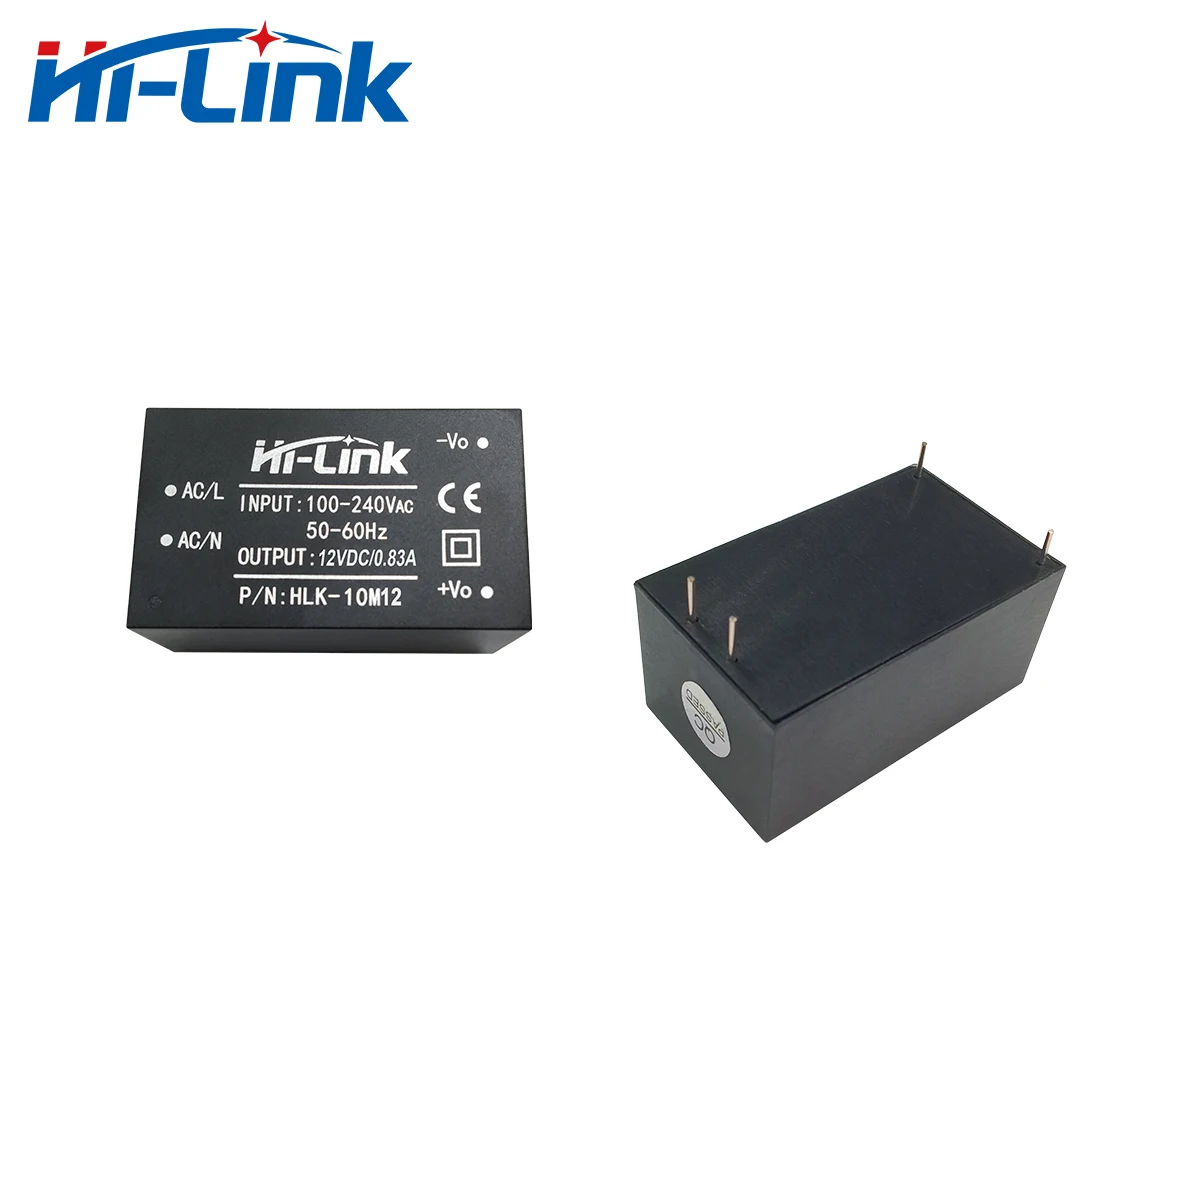 HI-LINK Module dalimentation isolé du commutateur domestique intelligent HLK-10M12 AC-DC 220V à 12V 10W 10M12 220V to 12V 2 PCS 